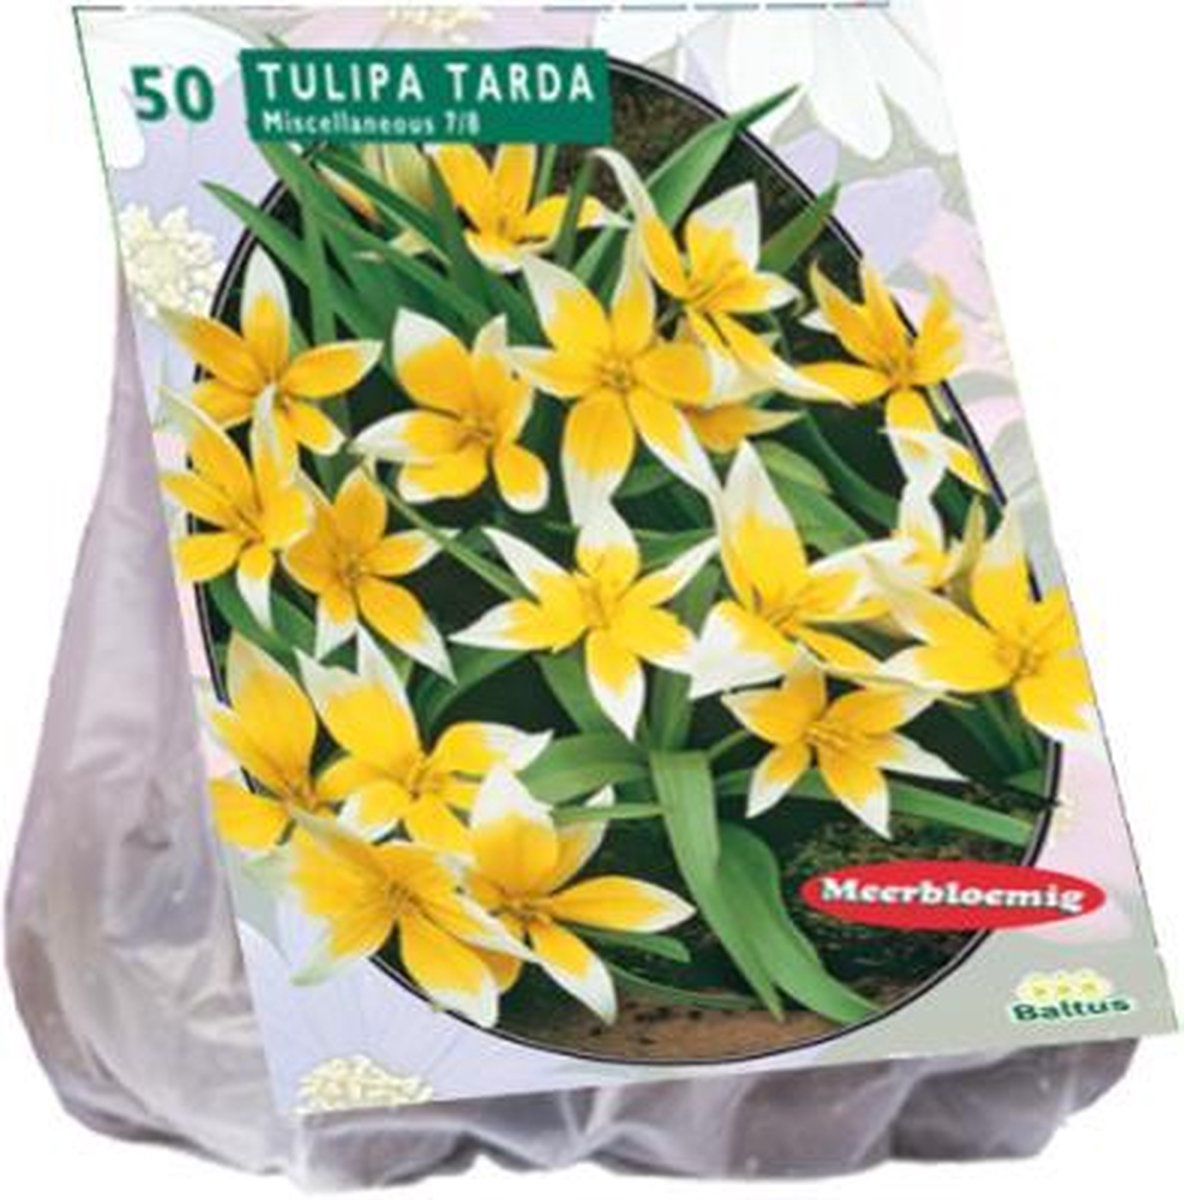 Tulipa (Tulpen) bloembollen - Tarda - 1x50 stuks